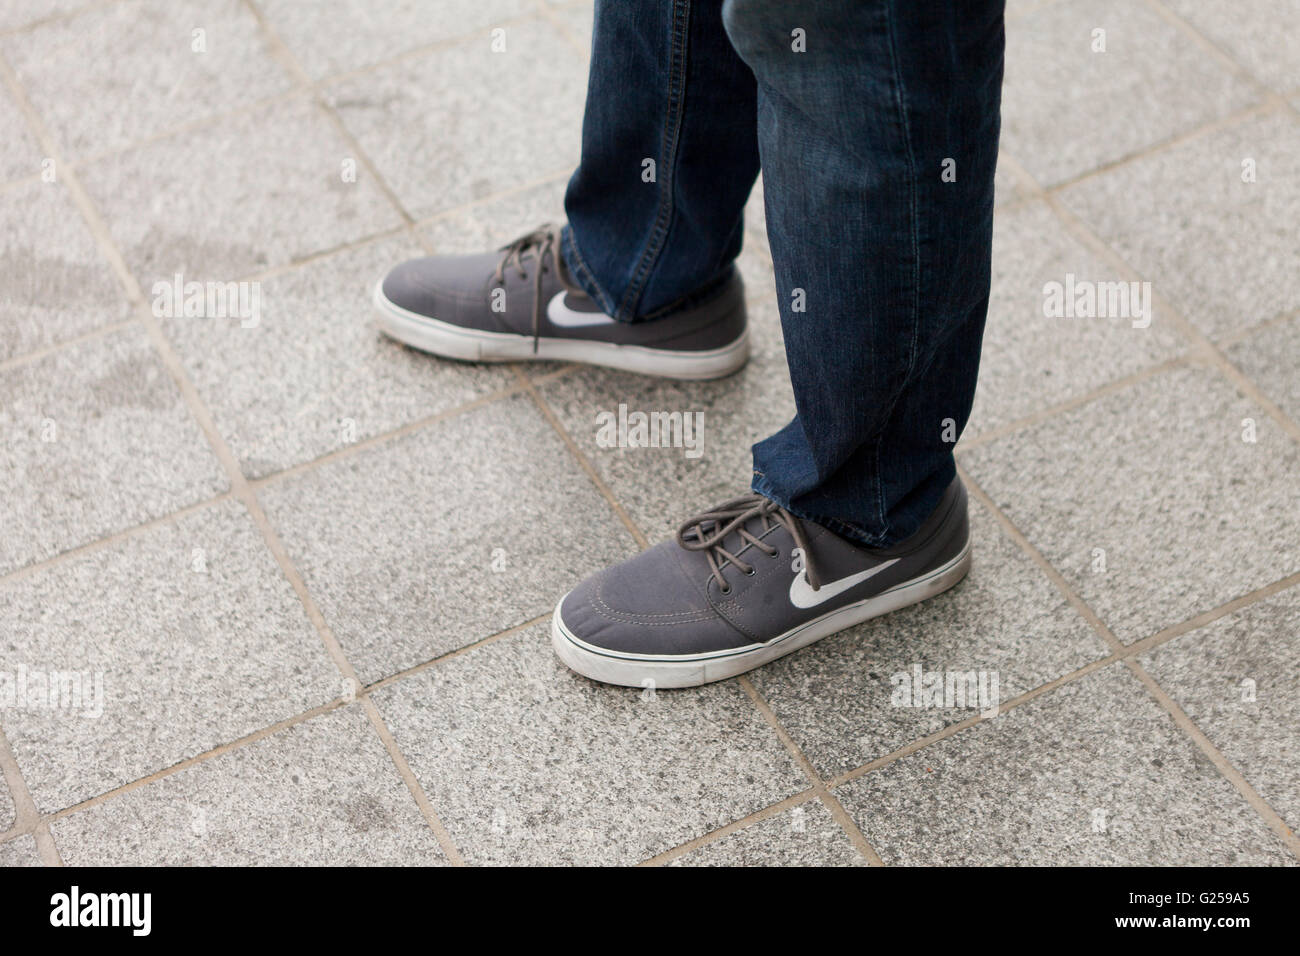 Zapatillas lona nike fotografías e imágenes alta resolución - Alamy